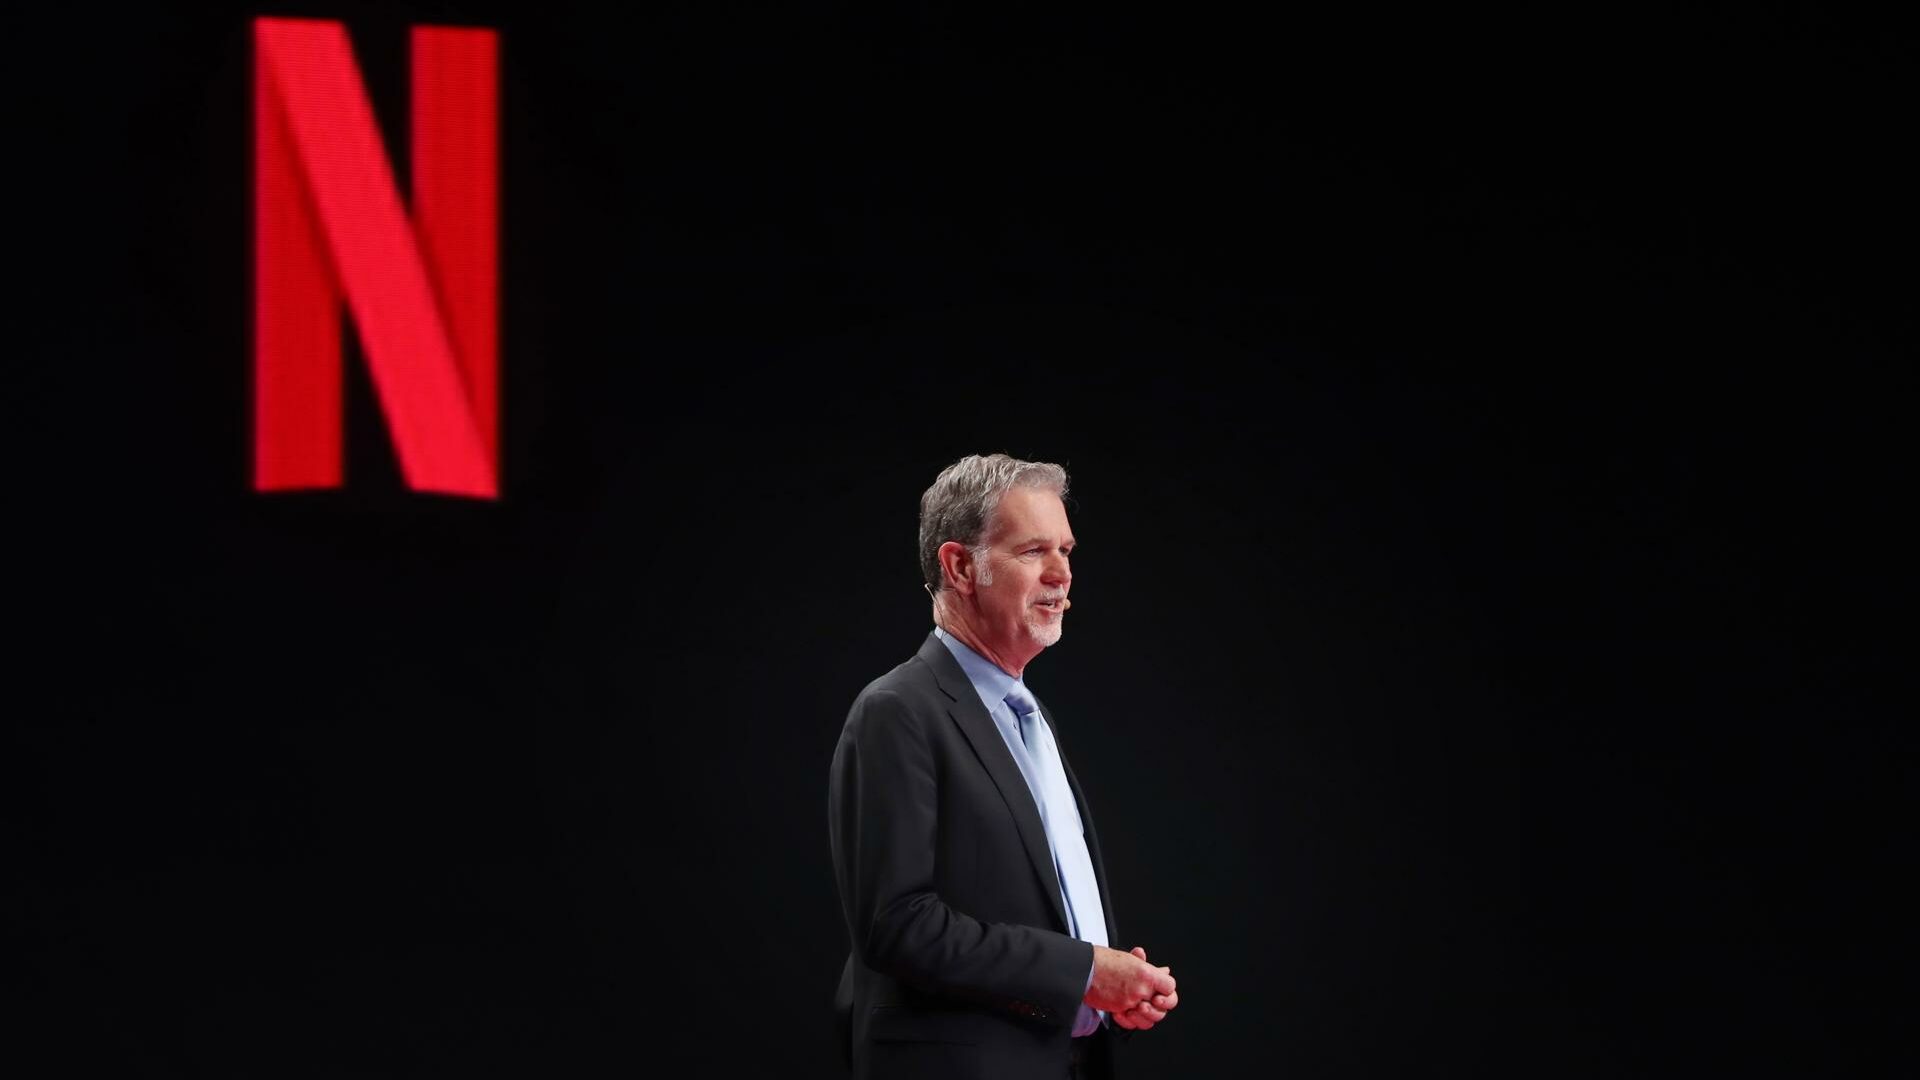 Reed Hastings dimite como CEO de Netflix tras 25 años y con casi 231 millones de suscriptores